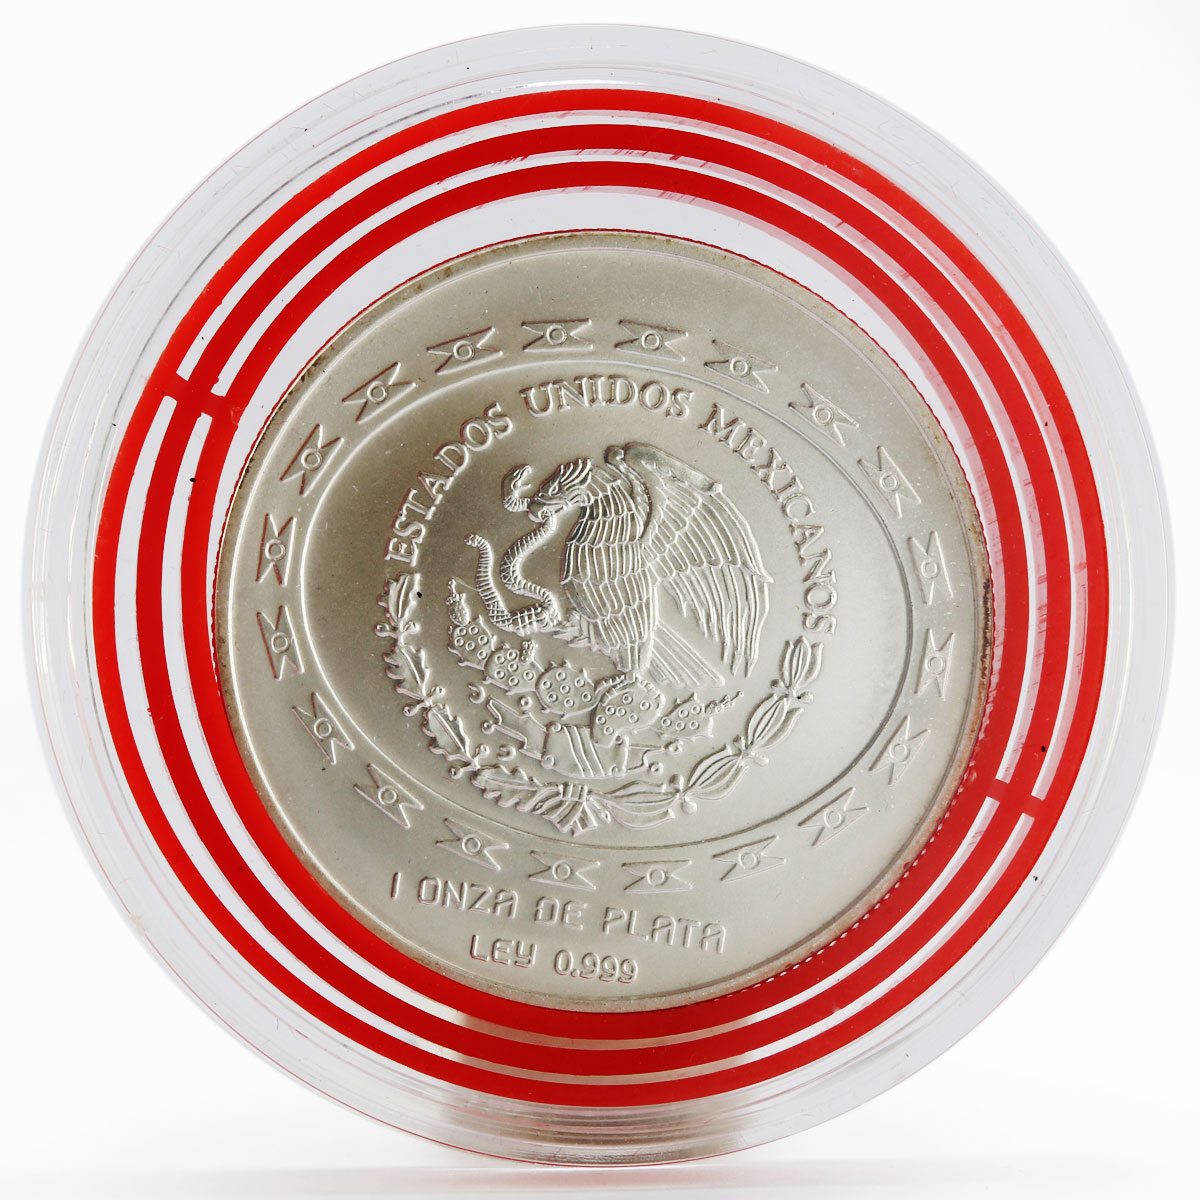 Mexico 5 pesos Teotihuacan - Jugador de Pelota silver coin 1998